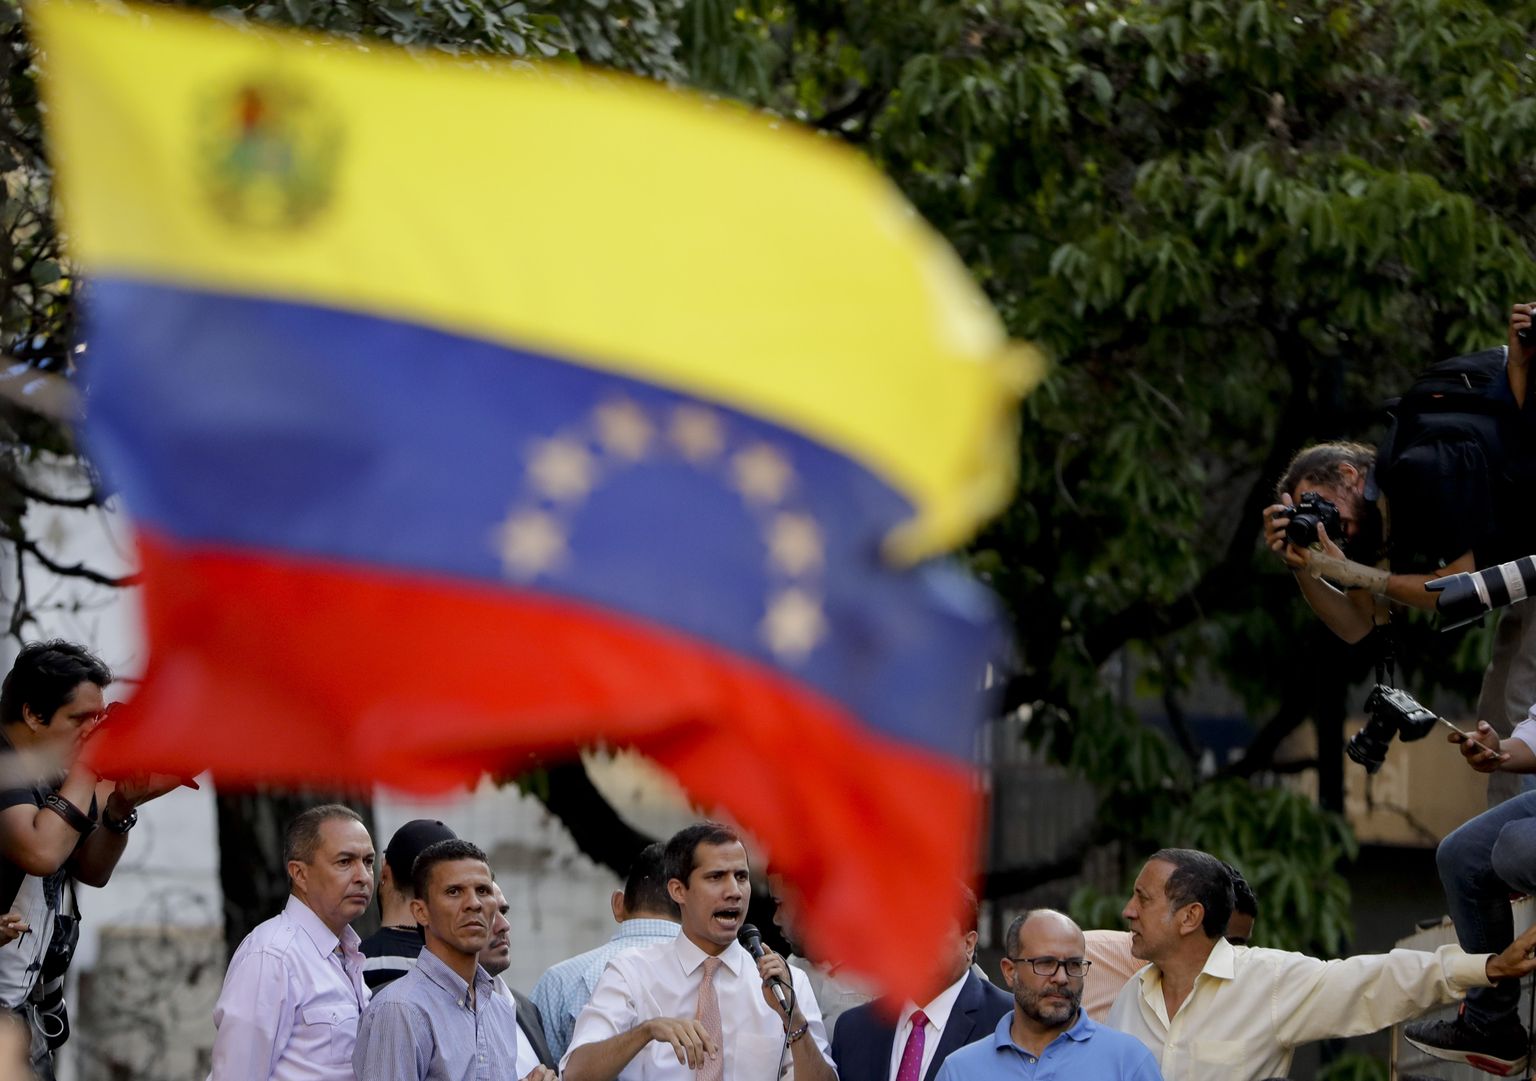 Venezuela opositsiooniliider Juan Guaidó esinemas Caracases. Foto on illustratiivne.